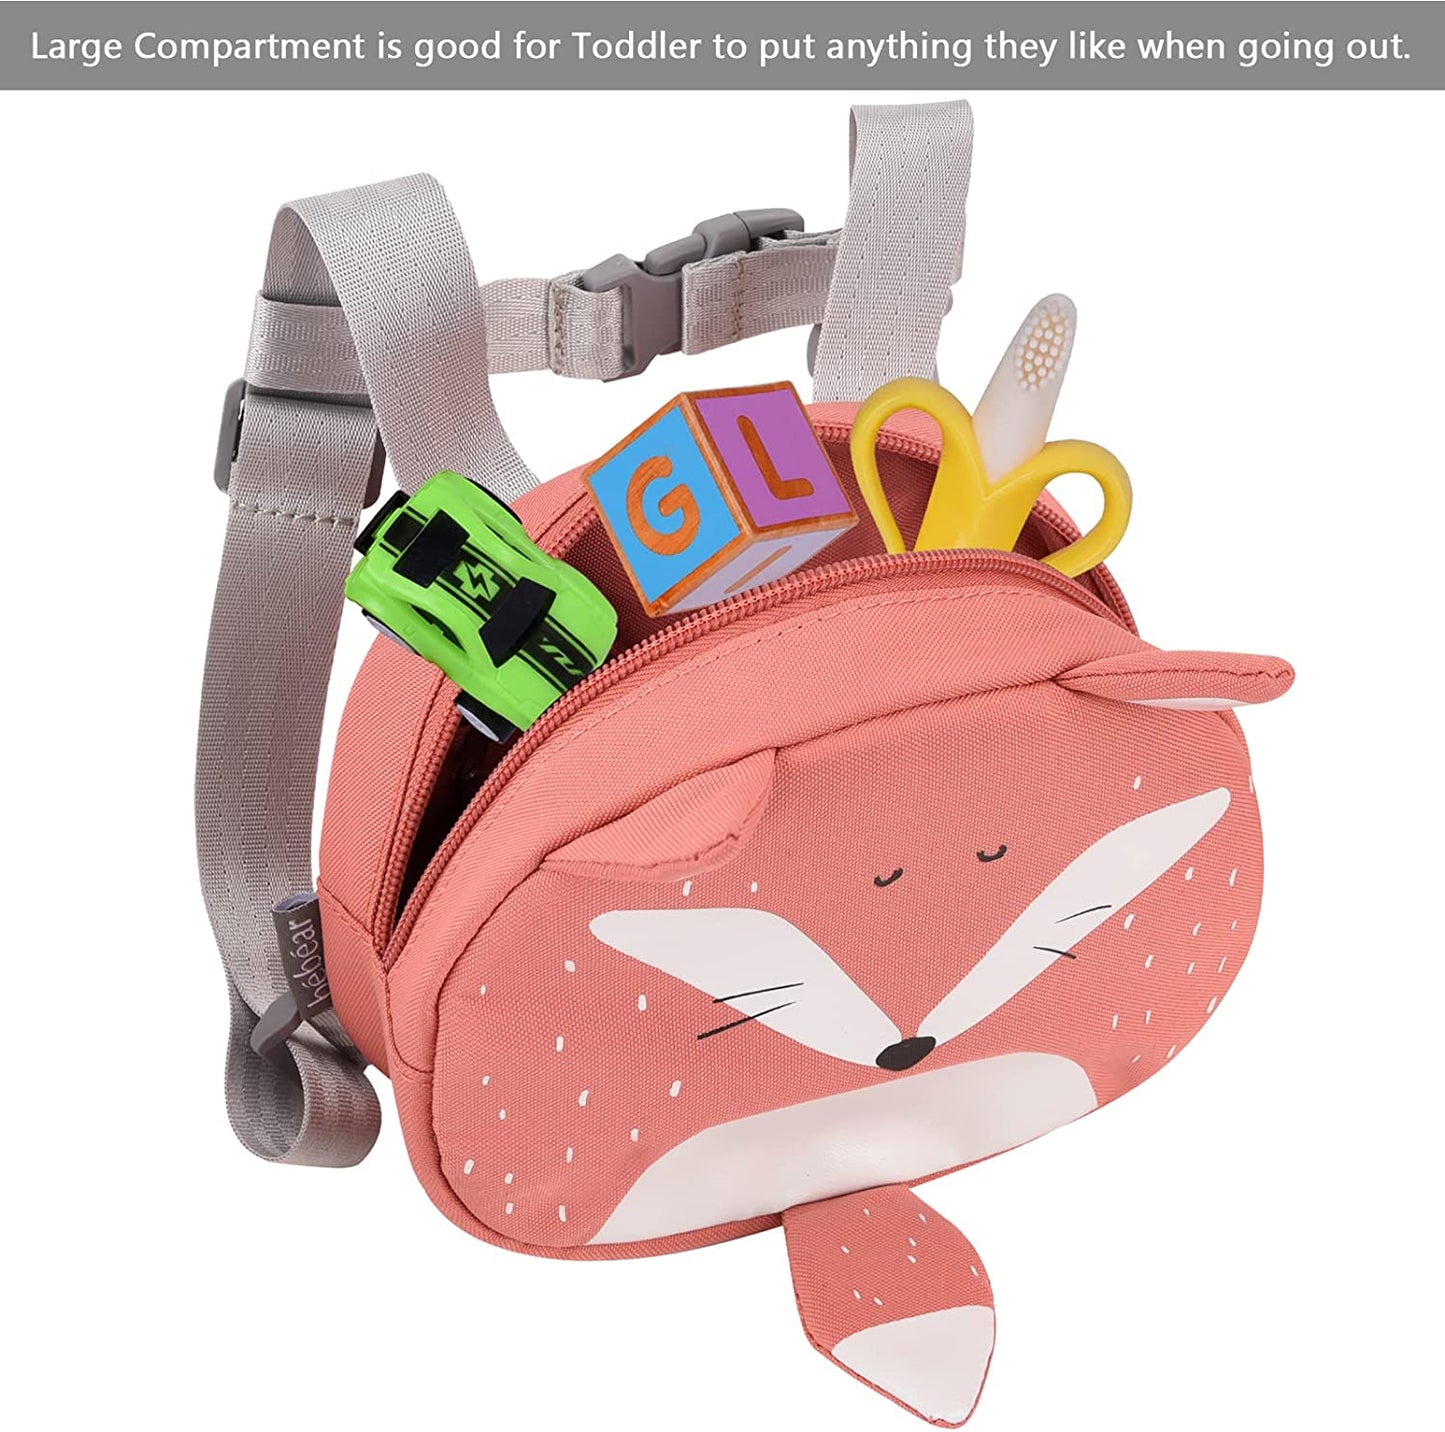 Bebamour - Mini mochila animal infantil com cinto de segurança